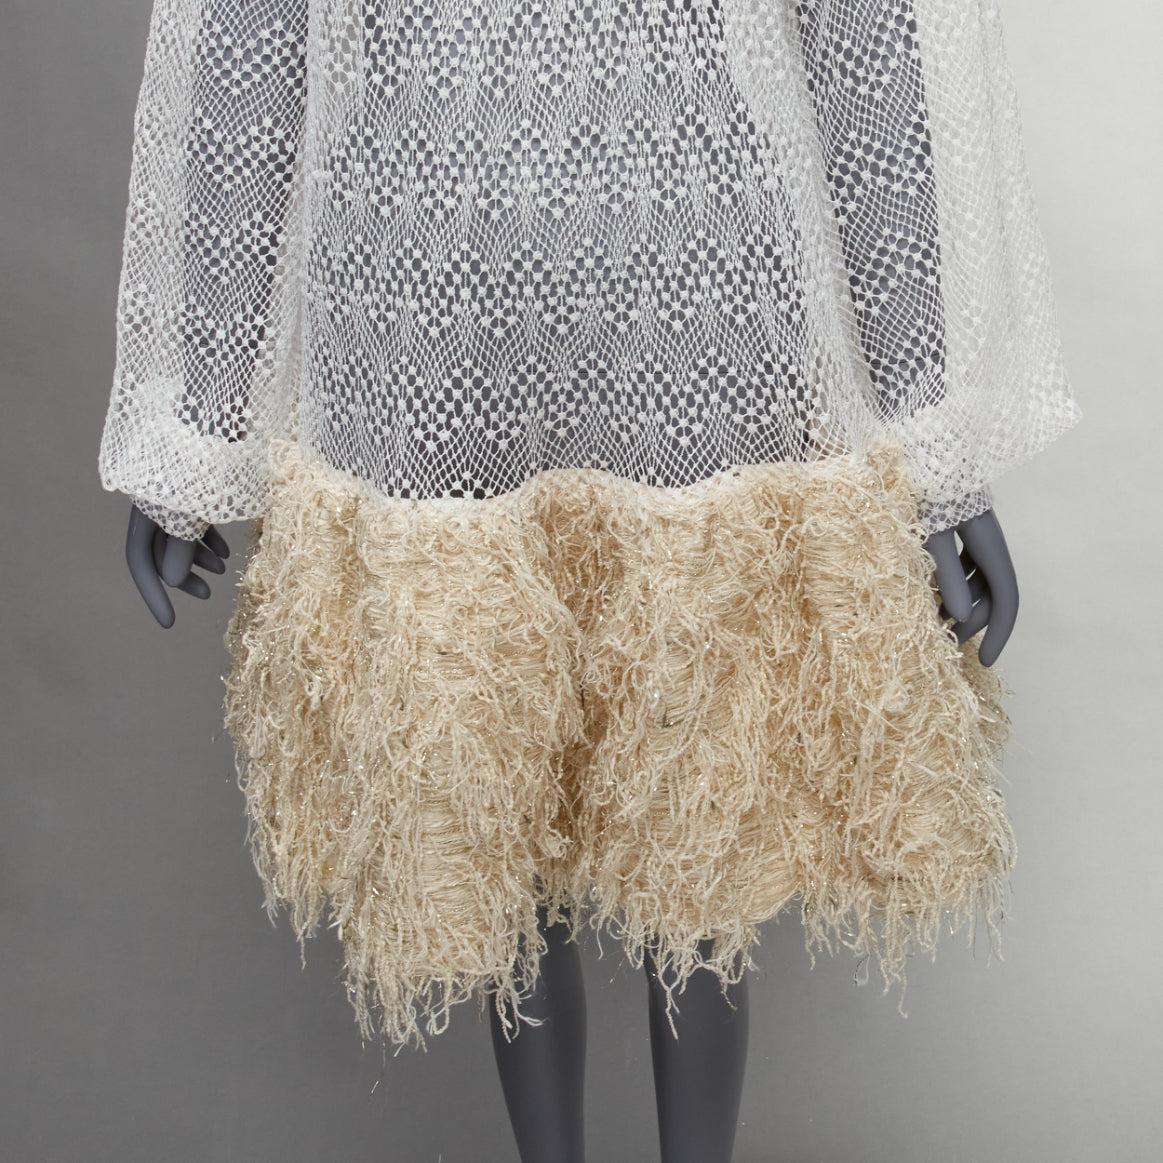 ANAIS JOURDEN 2018 Runway white net beige fringe skirt dress FR38 M For Sale 3